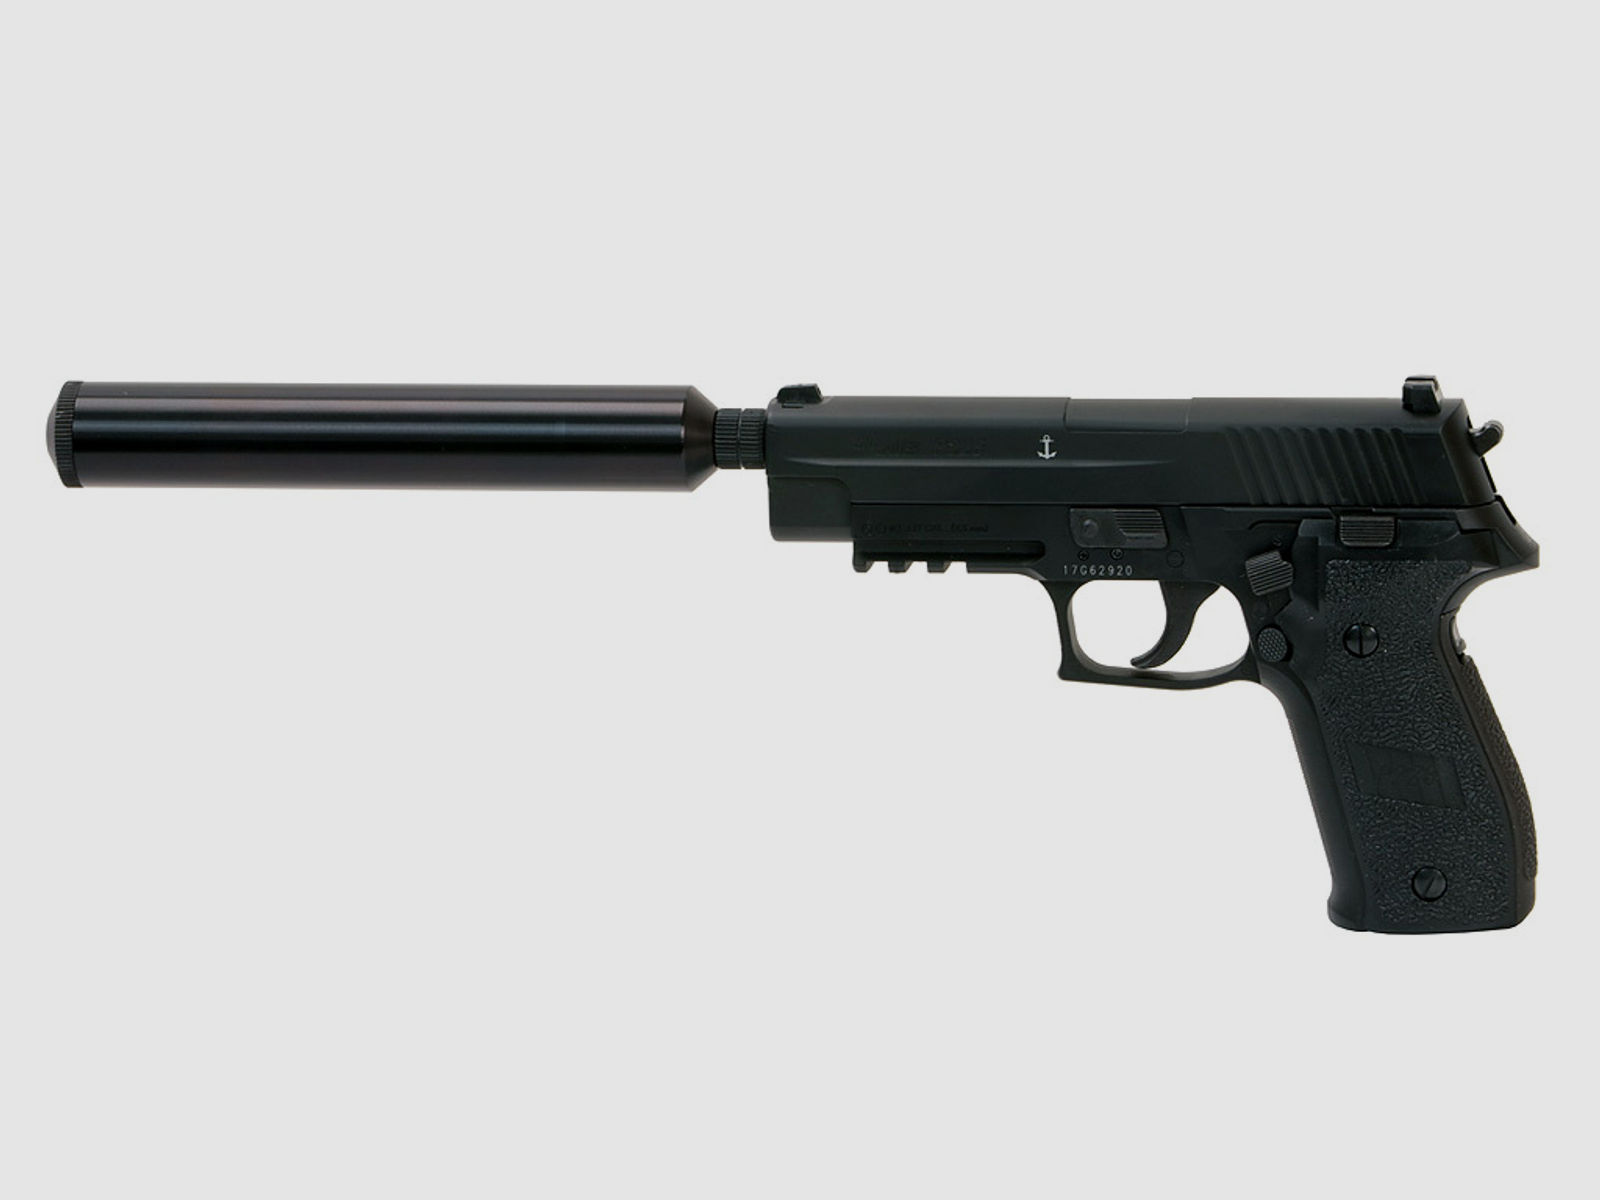 SchalldĂ¤mpferadapter fĂĽr CO2 Pistolen Sig Sauer P226, Kaliber 4,5 mm Diabolo